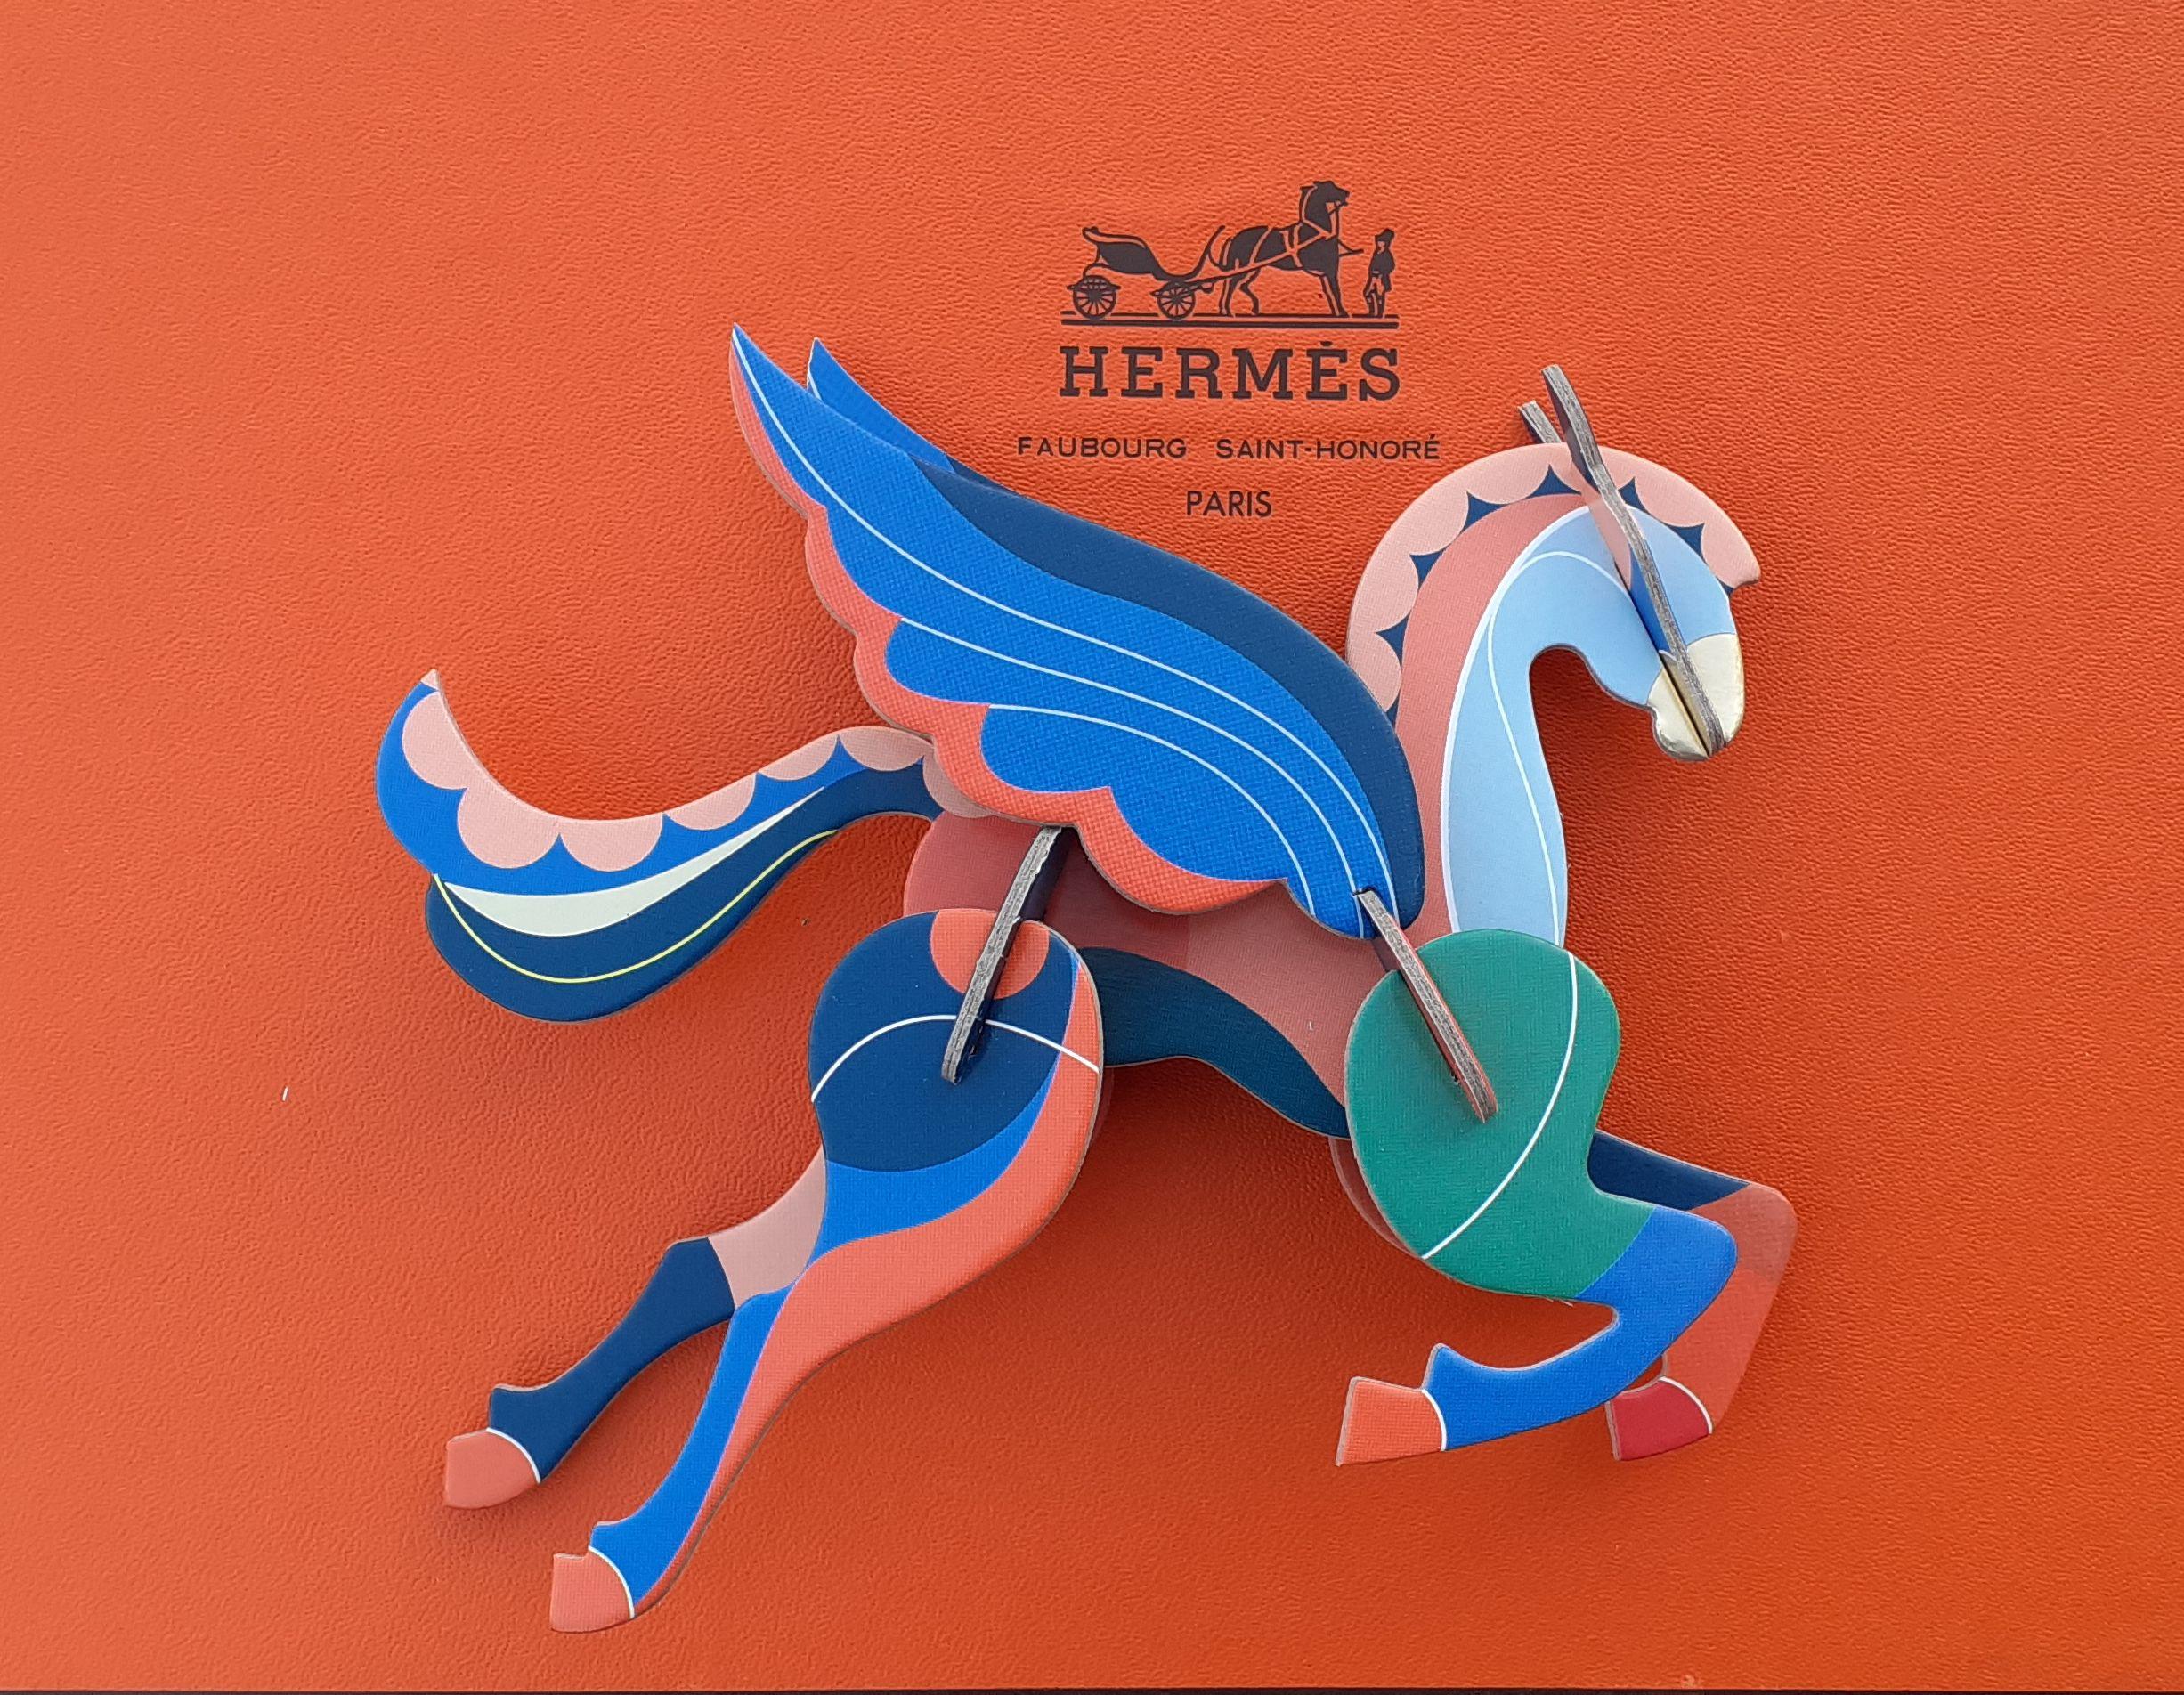 Super mignon Hermès Pegasus authentique

Composé de 10 pièces de carton à assembler

Une ficelle permettra de le suspendre

Les instructions de montage se trouvent à l'intérieur de l'emballage

Coloris : Bleu, rose, vert, doré

Dimensions (autour) :